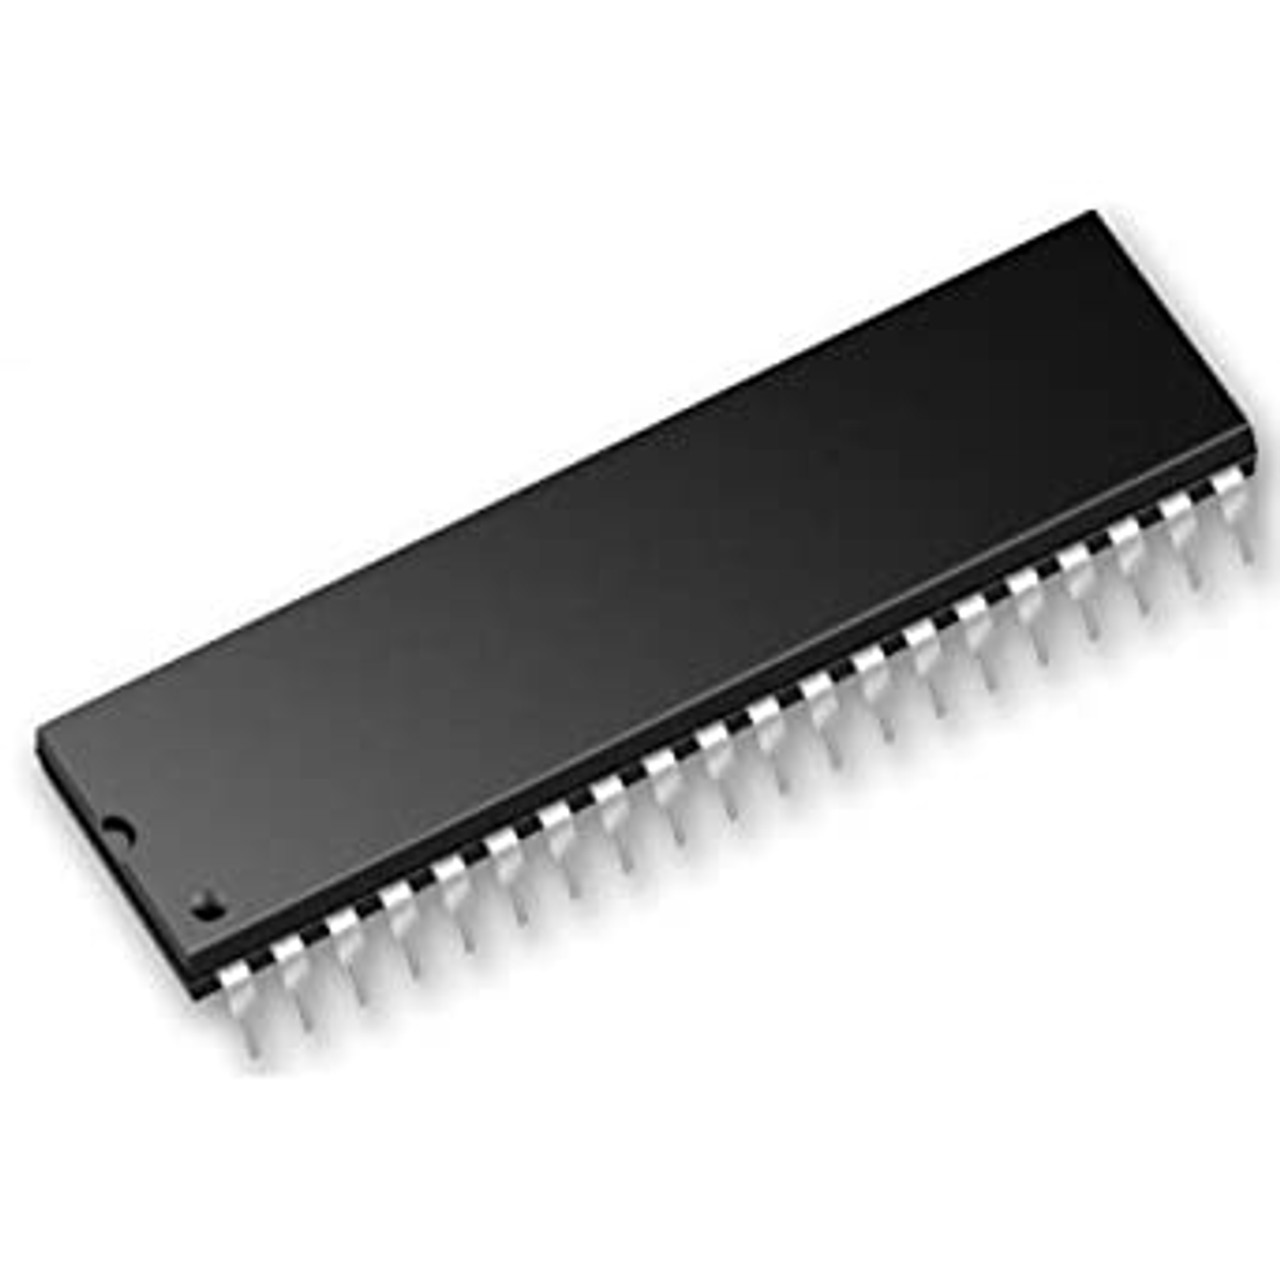 PIC16F877A-I/P ; Enhanced Flash Microcontroller,  DIP-40